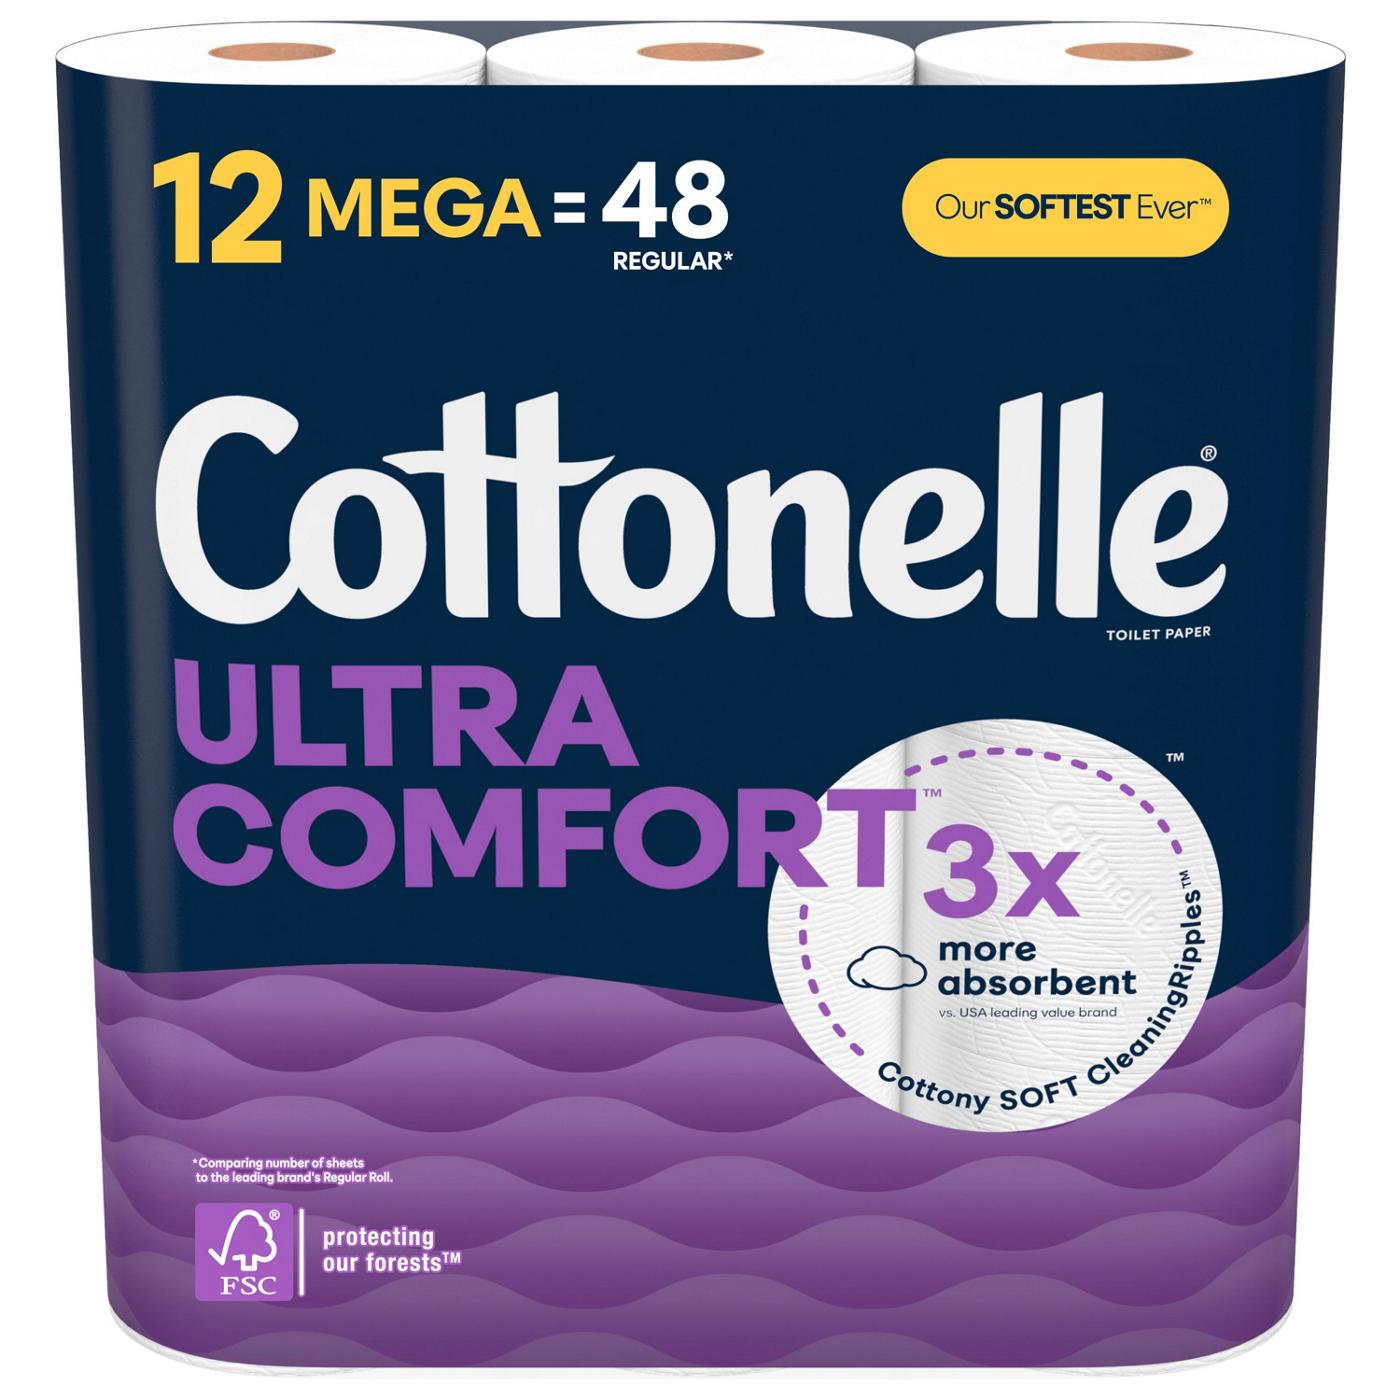 Cottonelle Ultra Comfort Strong Toilet Paper - Shop Toilet Paper at H-E-B